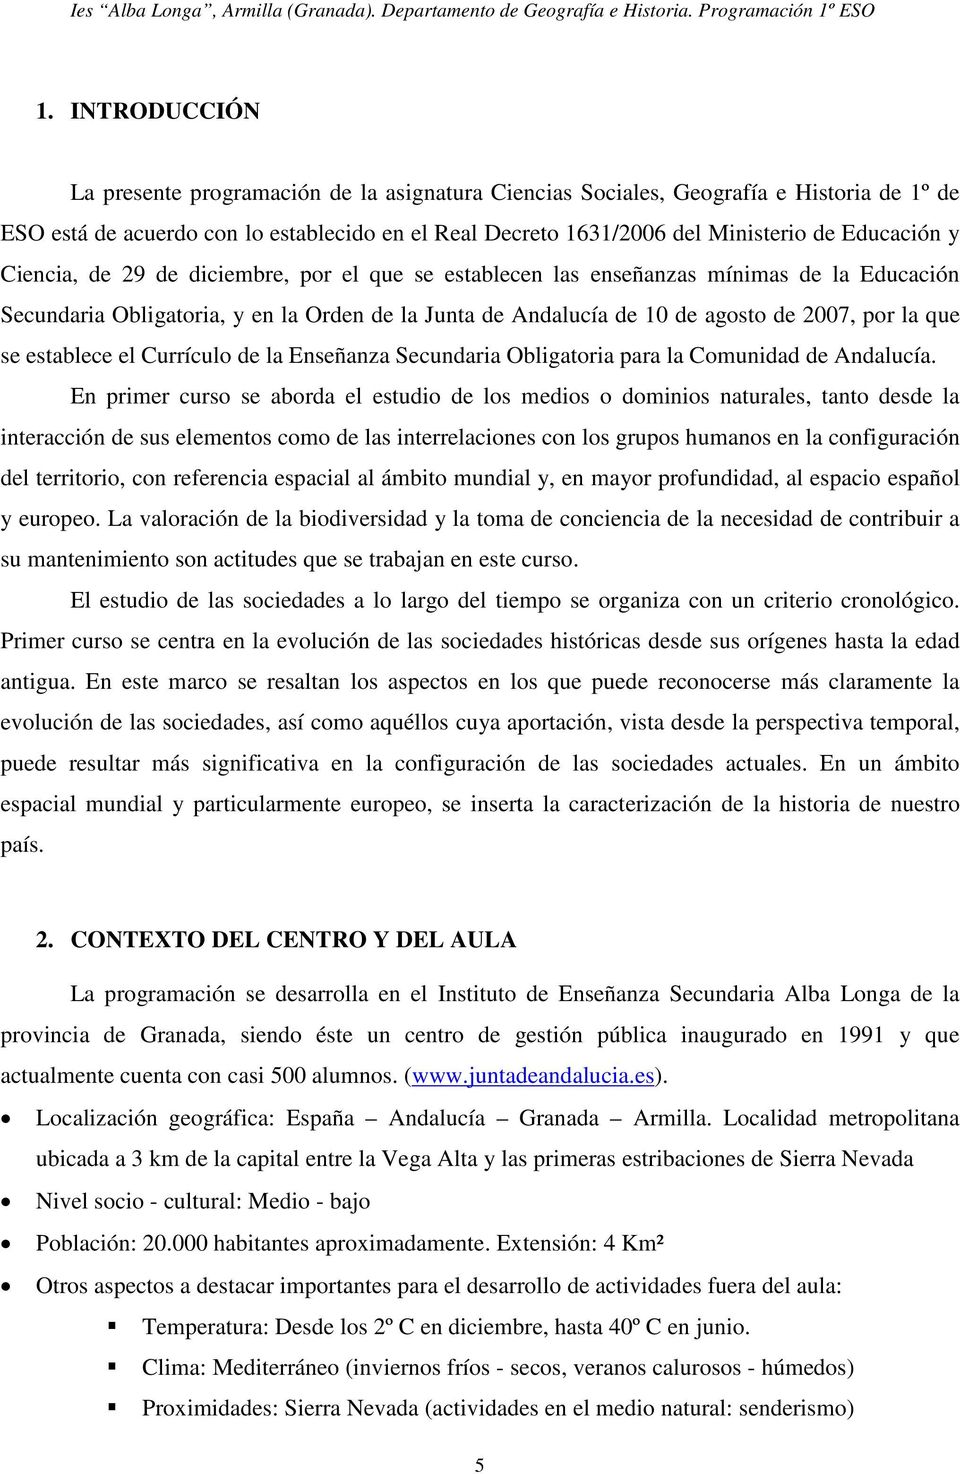 que se establece el Currículo de la Enseñanza Secundaria Obligatoria para la Comunidad de Andalucía.